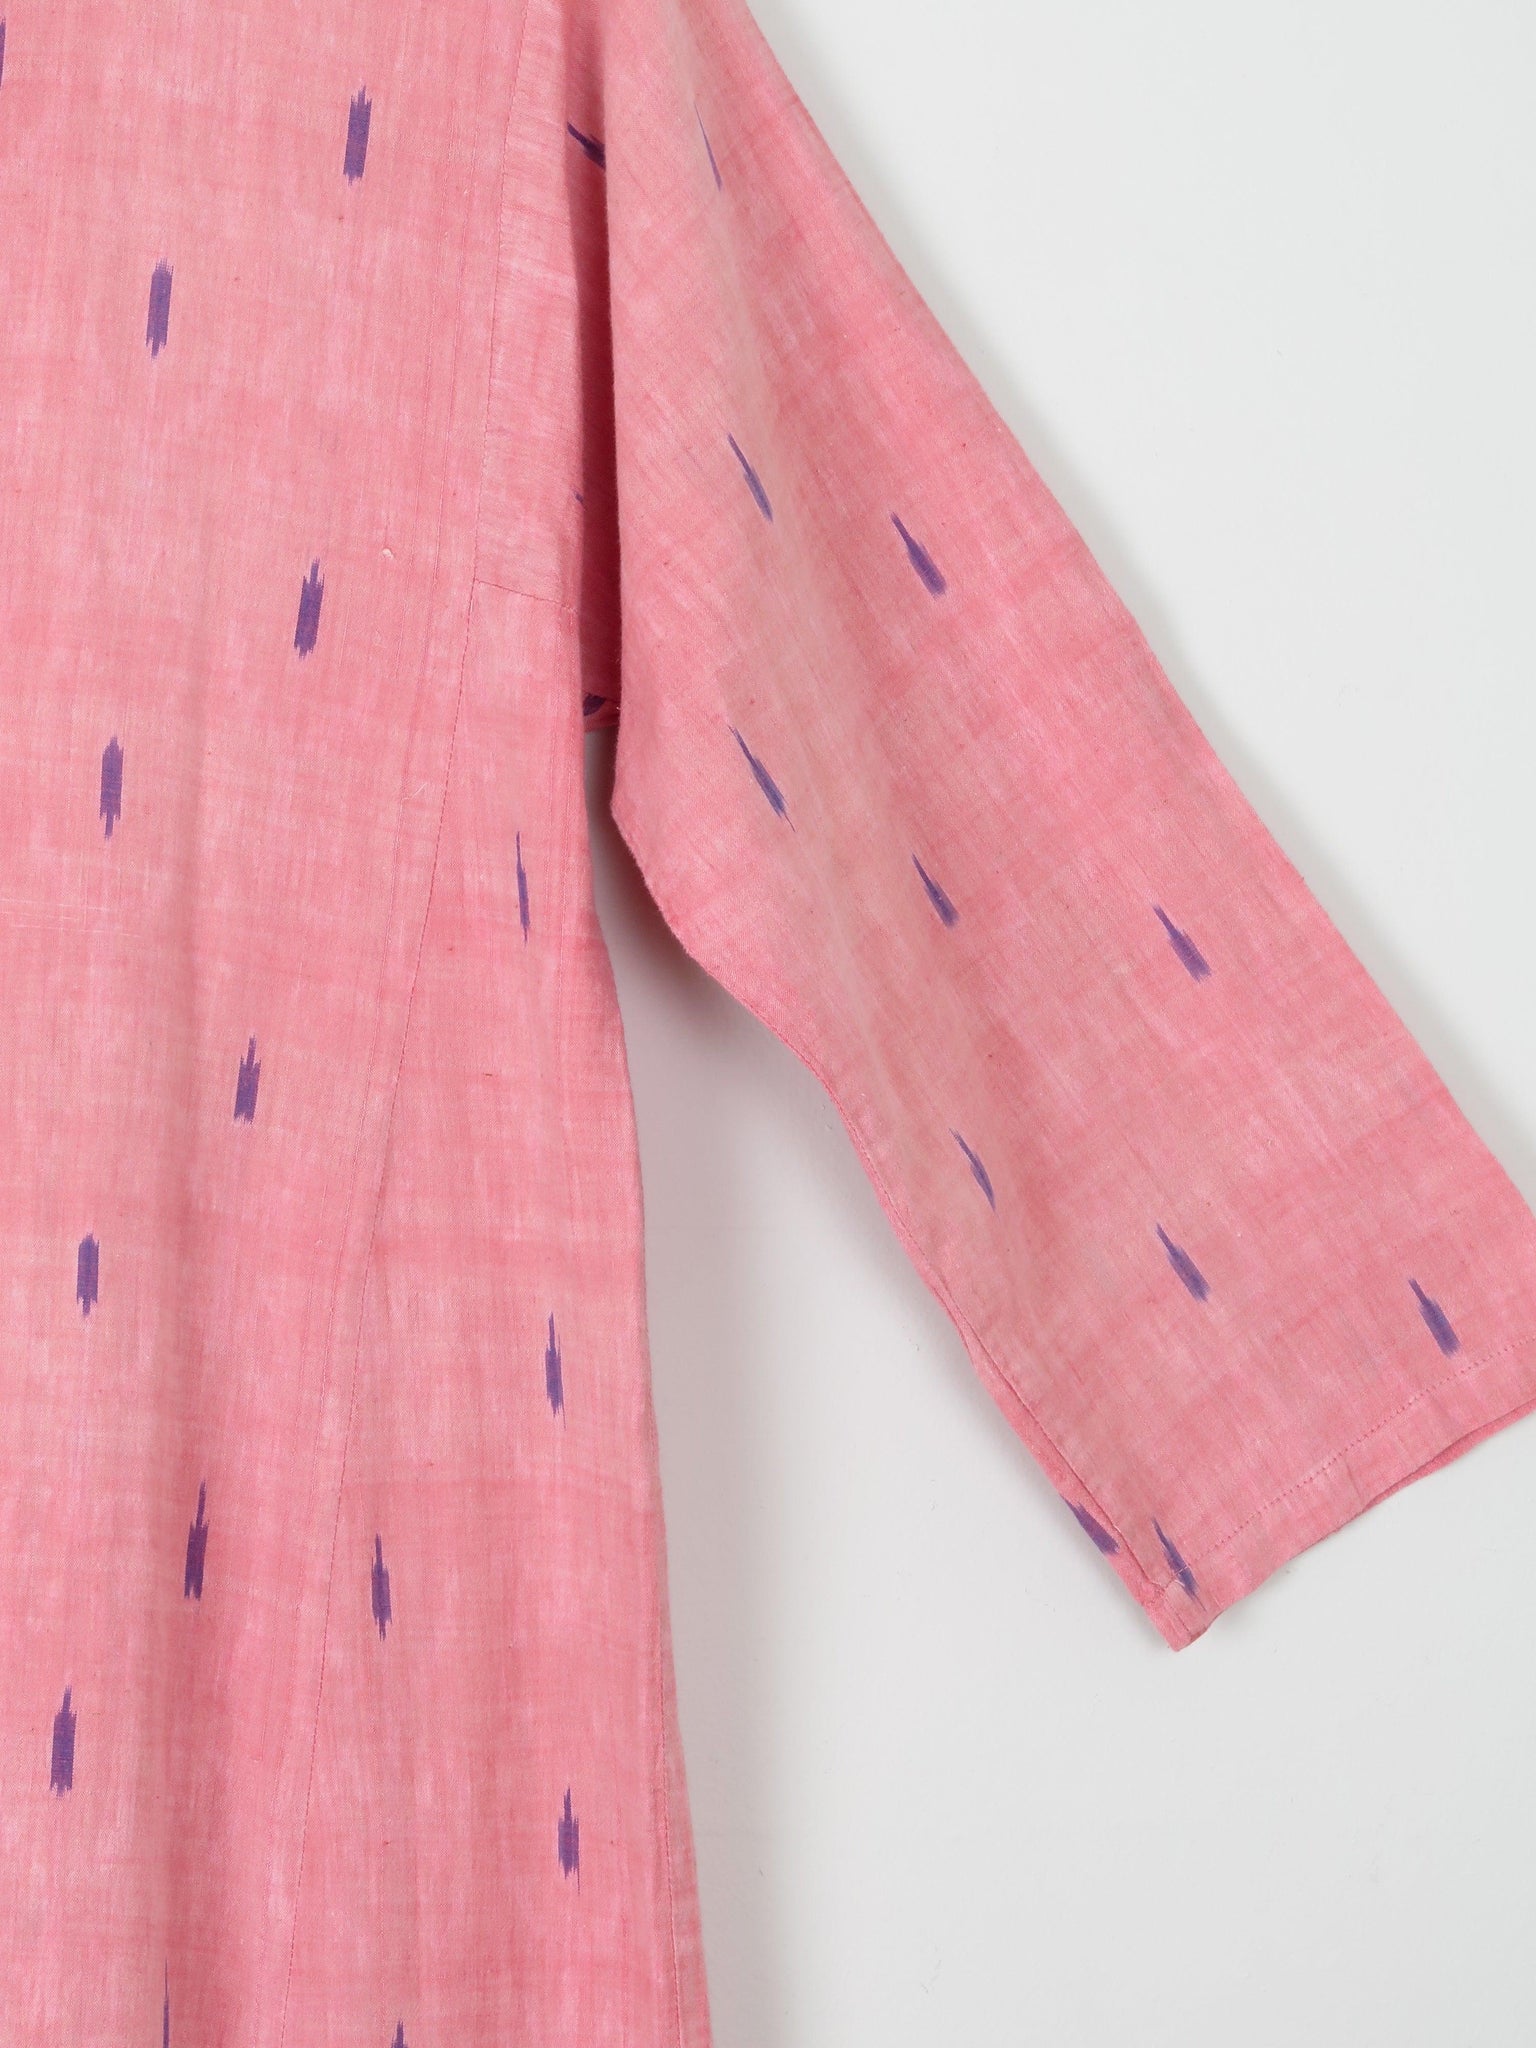 Vintage Indian Pink Kaftan/Tunic/Dress L - The Harlequin